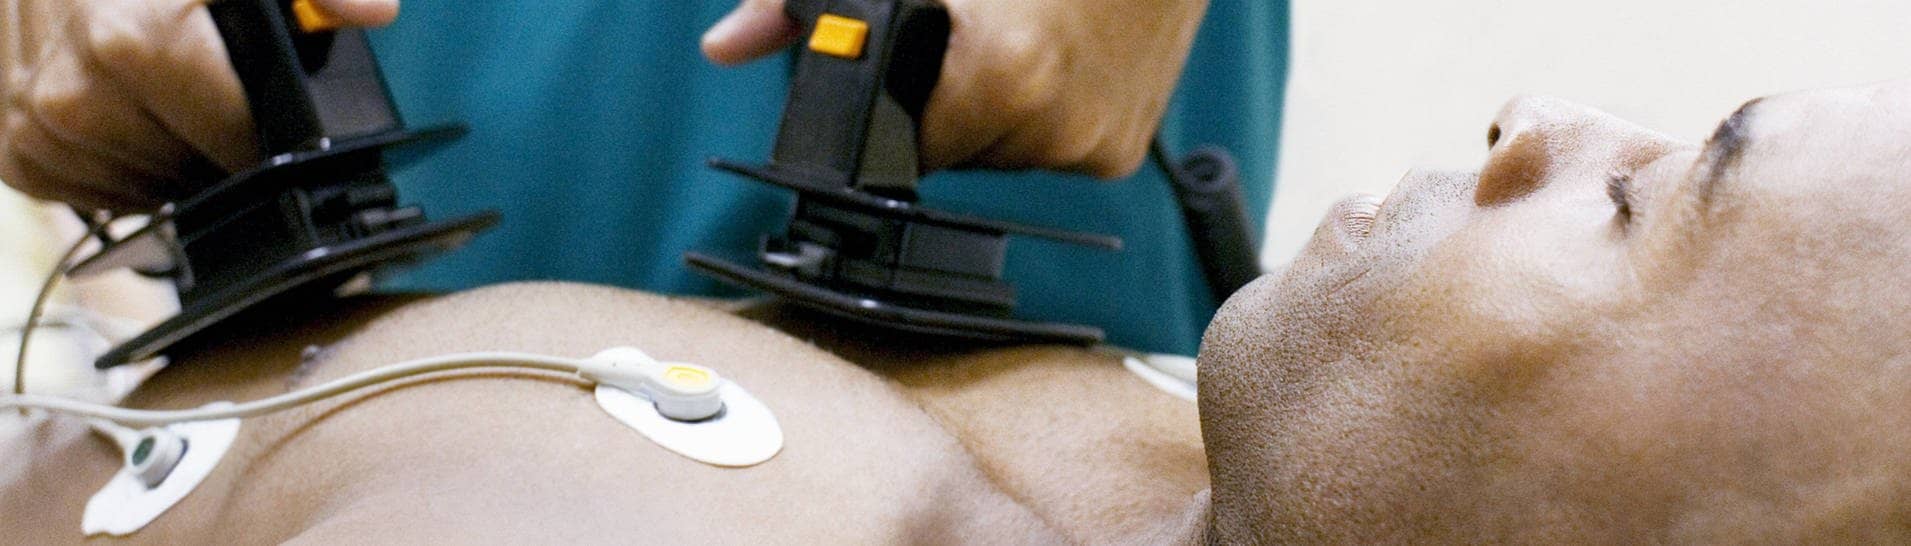 Ein bewusstloser Mann liegt, während ein Mediziner ihm einen Defibrillator auf die Brust hält